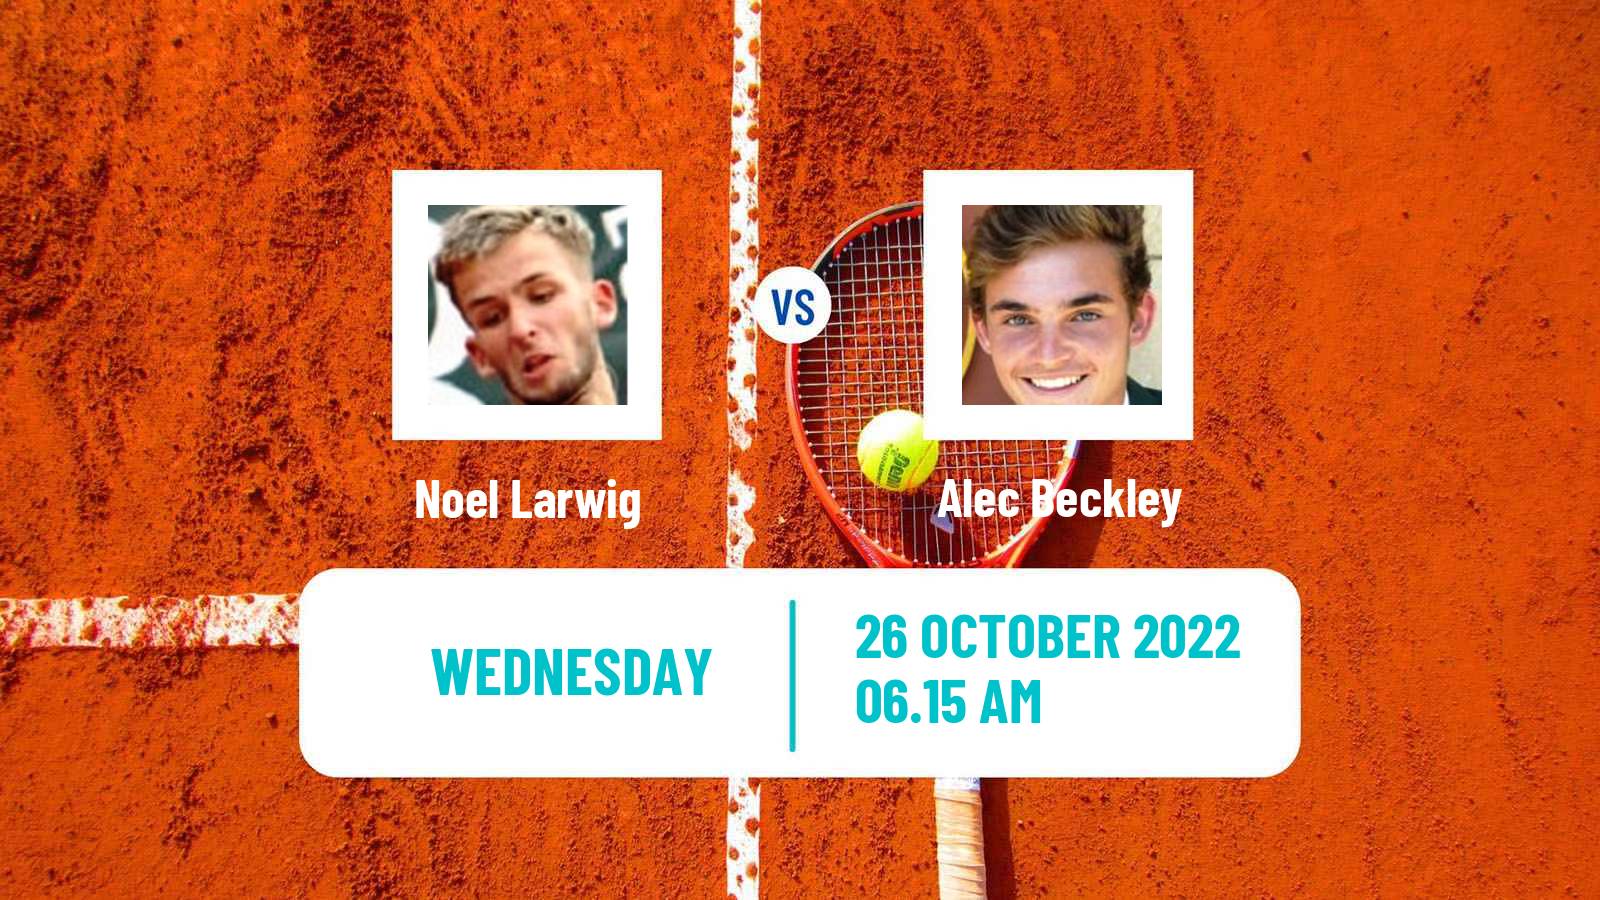 Tennis ITF Tournaments Noel Larwig - Alec Beckley